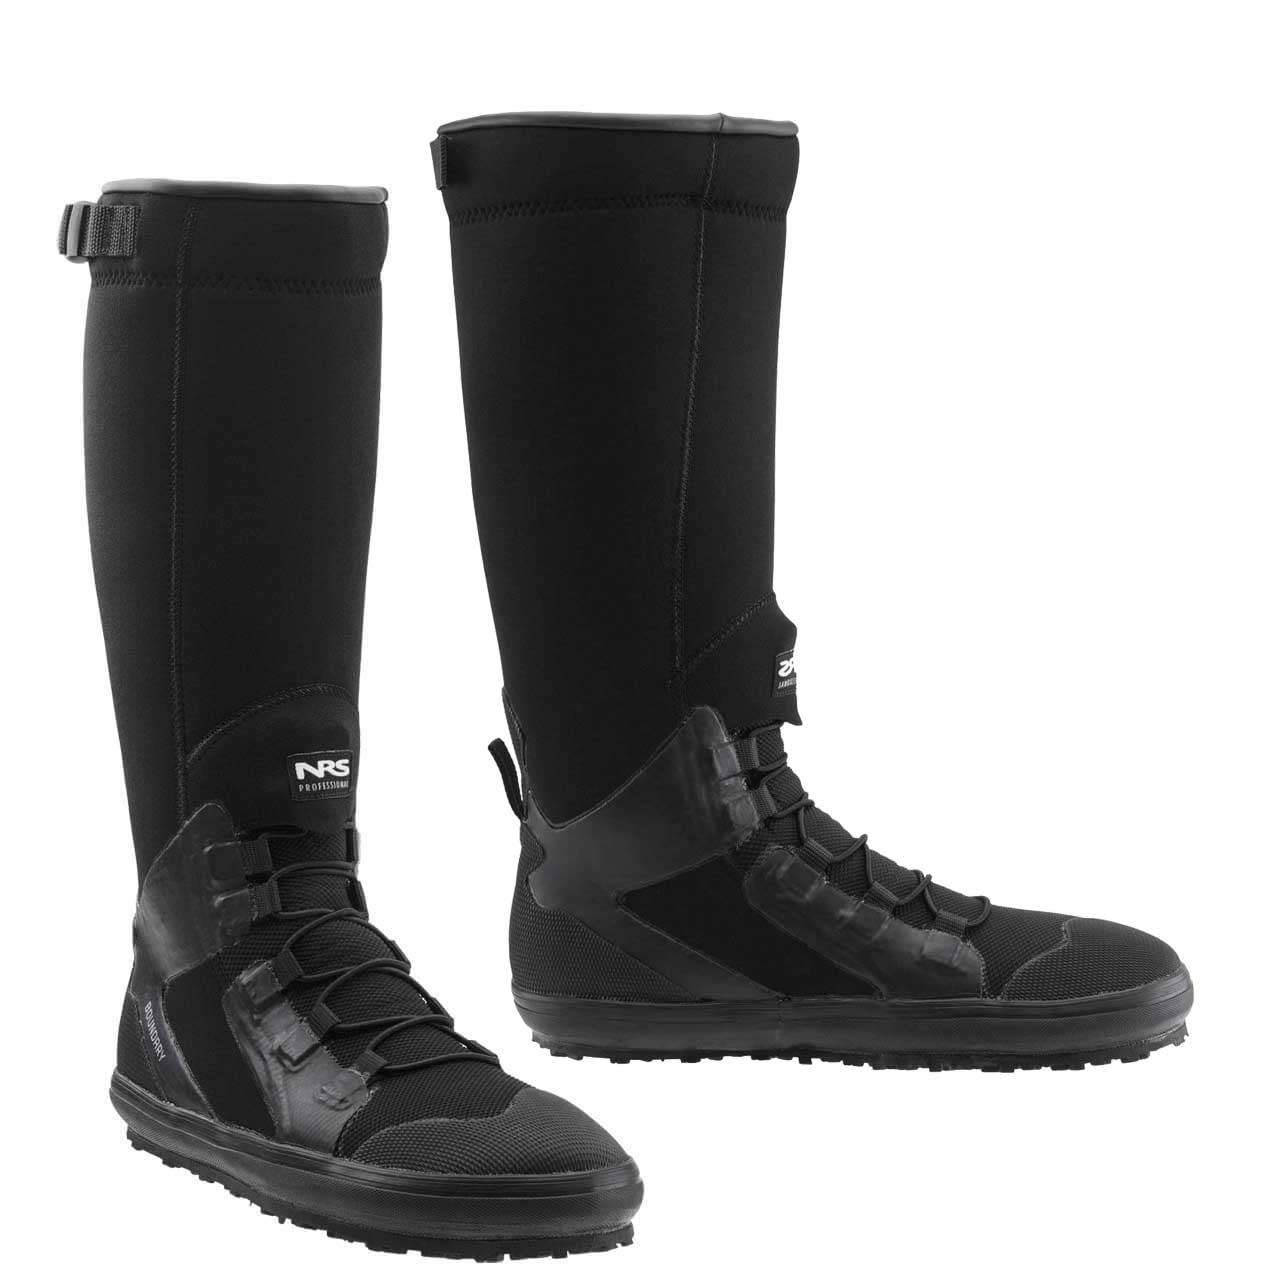 NRS Boundary Boots - Black, US 7 | EU 40.5)